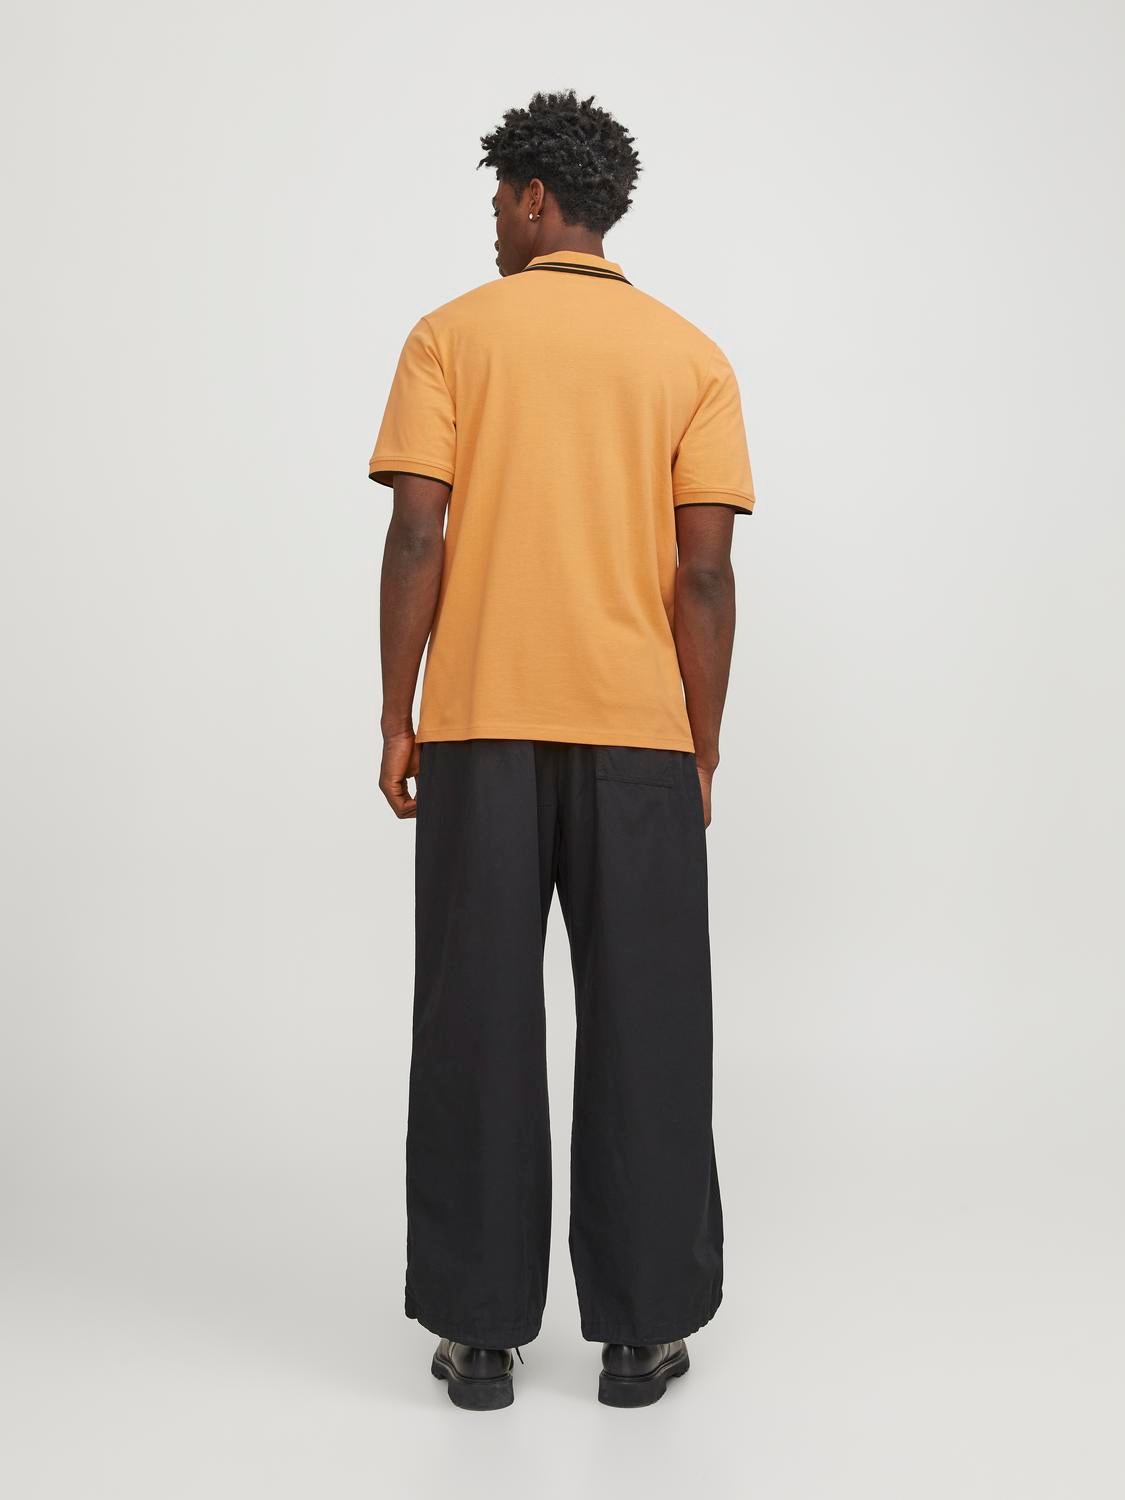 Jack & Jones T-shirt Uni Polo -Tangerine - 12252395